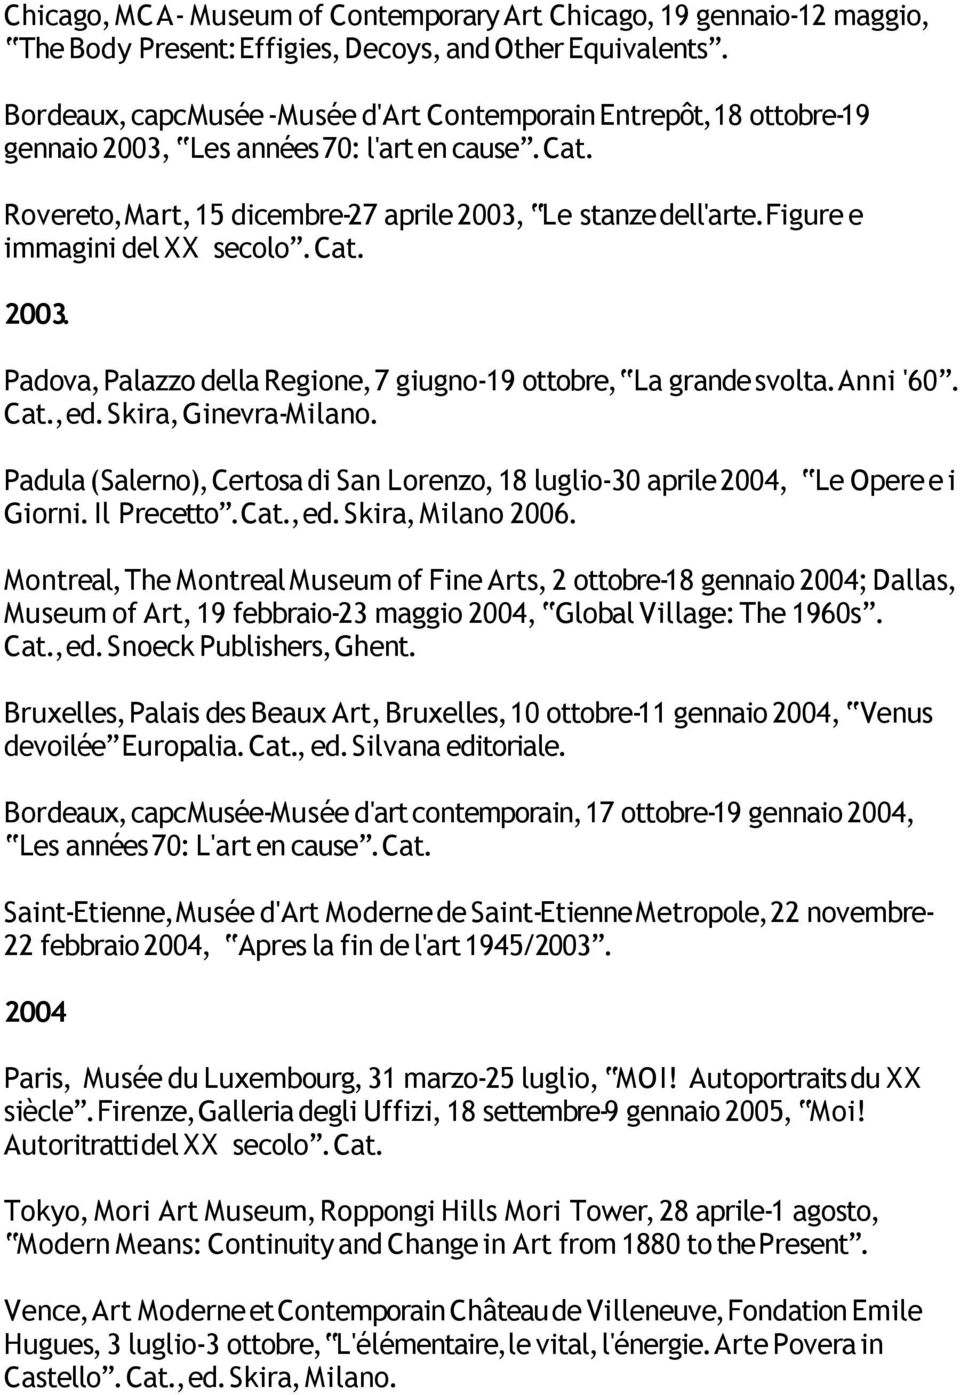 Figure e immagini del XX secolo. 2003. Padova, Palazzo della Regione, 7 giugno-19 ottobre, La grande svolta. Anni '60., ed. Skira, Ginevra-Milano.